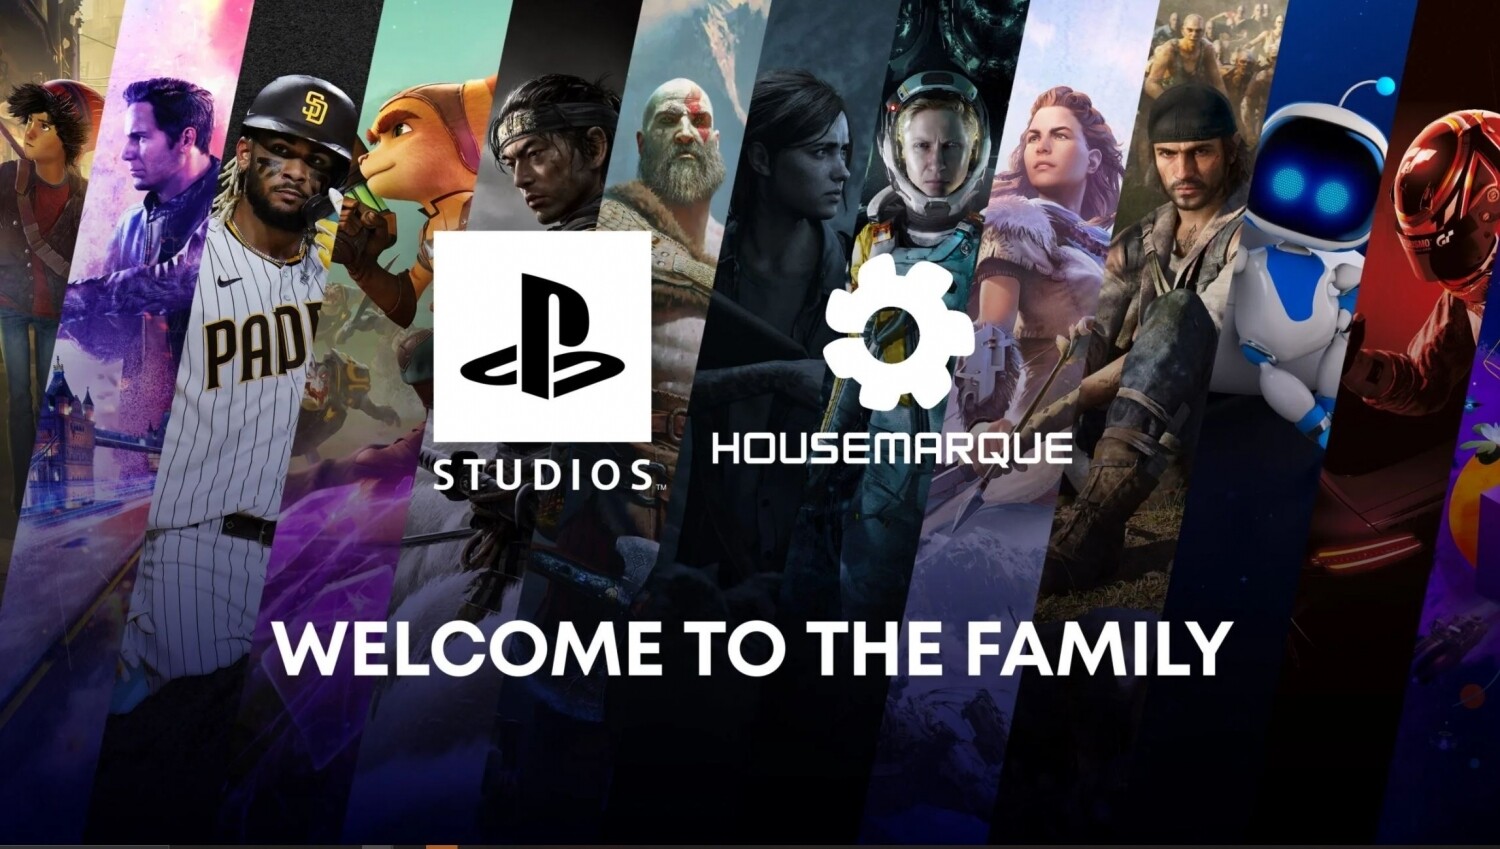 Sony Interactive Entertainment ("SIE") ha anunciado que ha completado la adquisición de Housemarque Oy ("Housemarque")